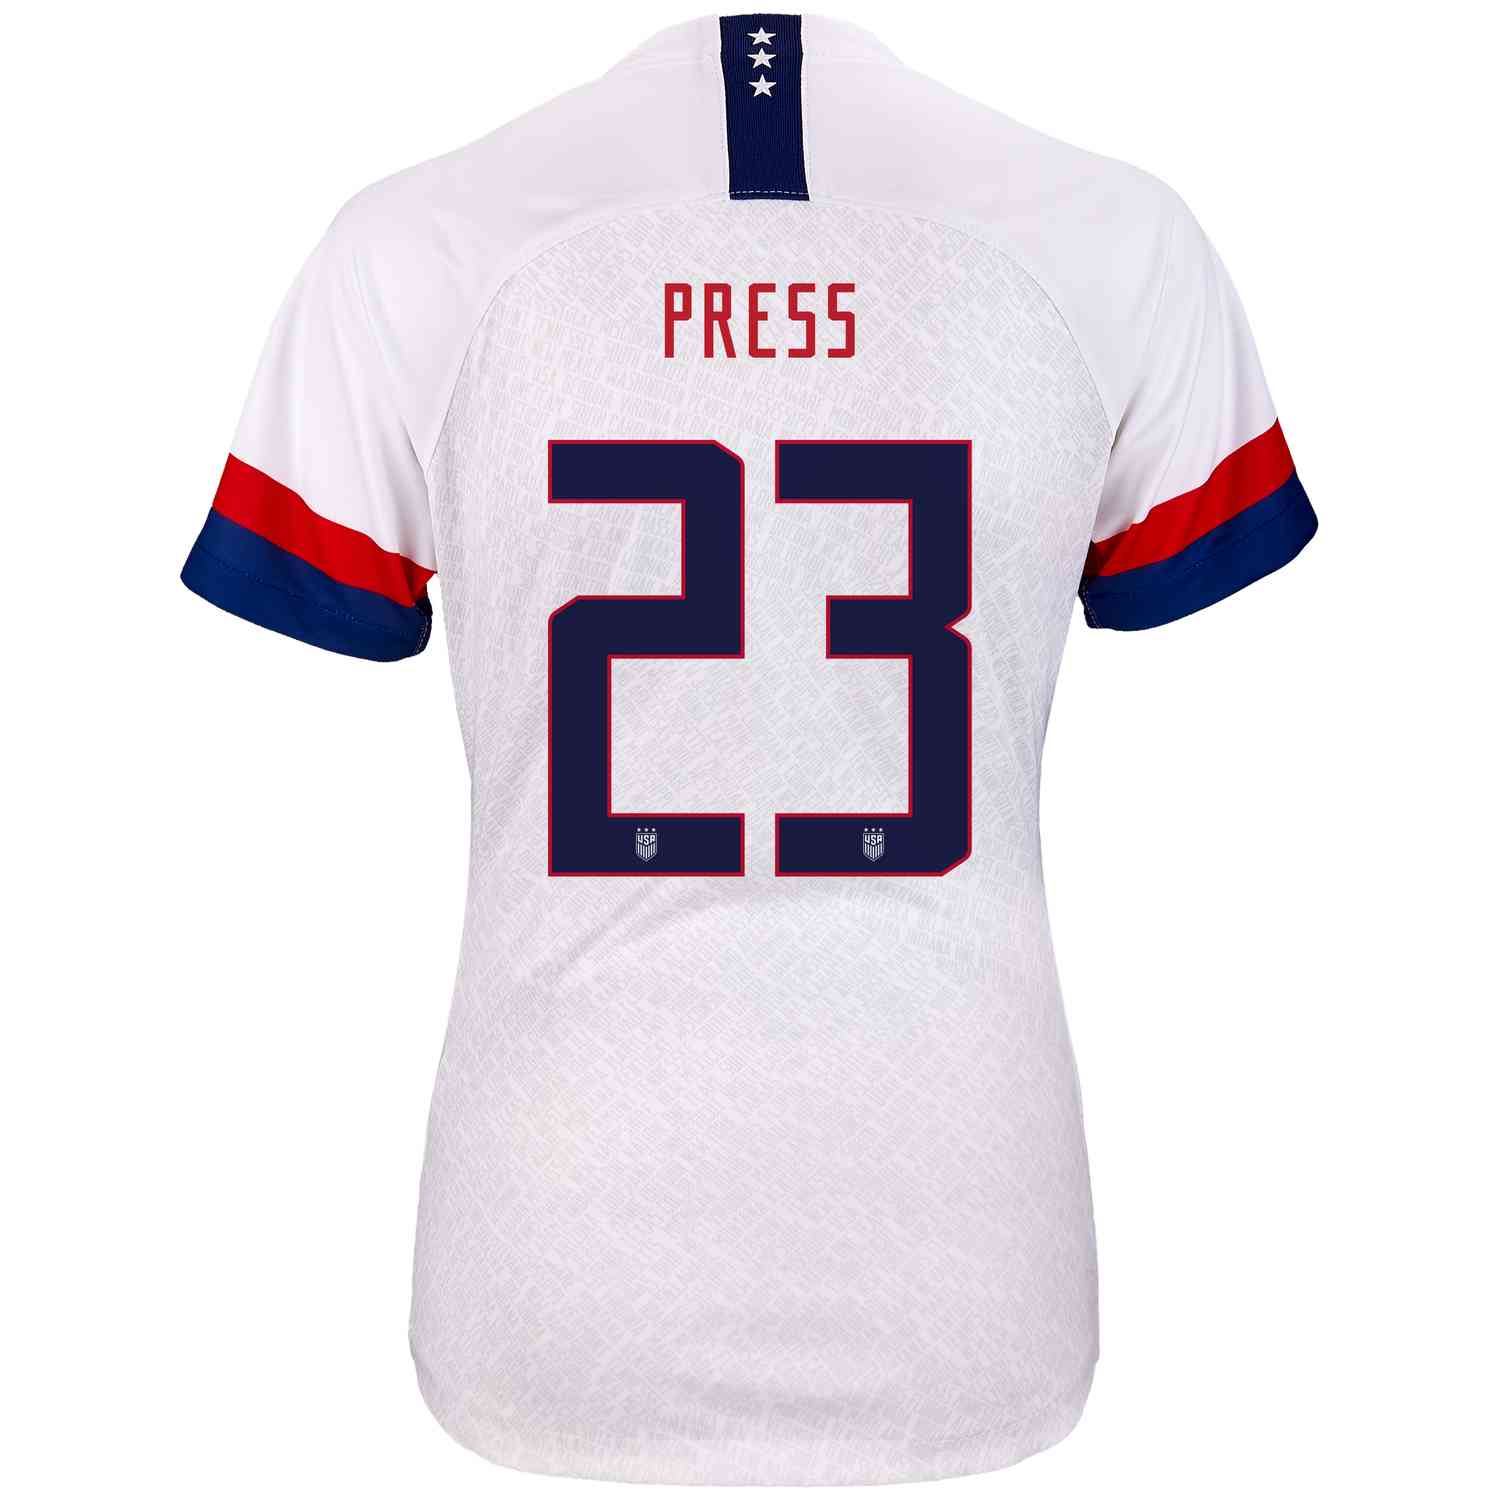 christen press soccer jersey